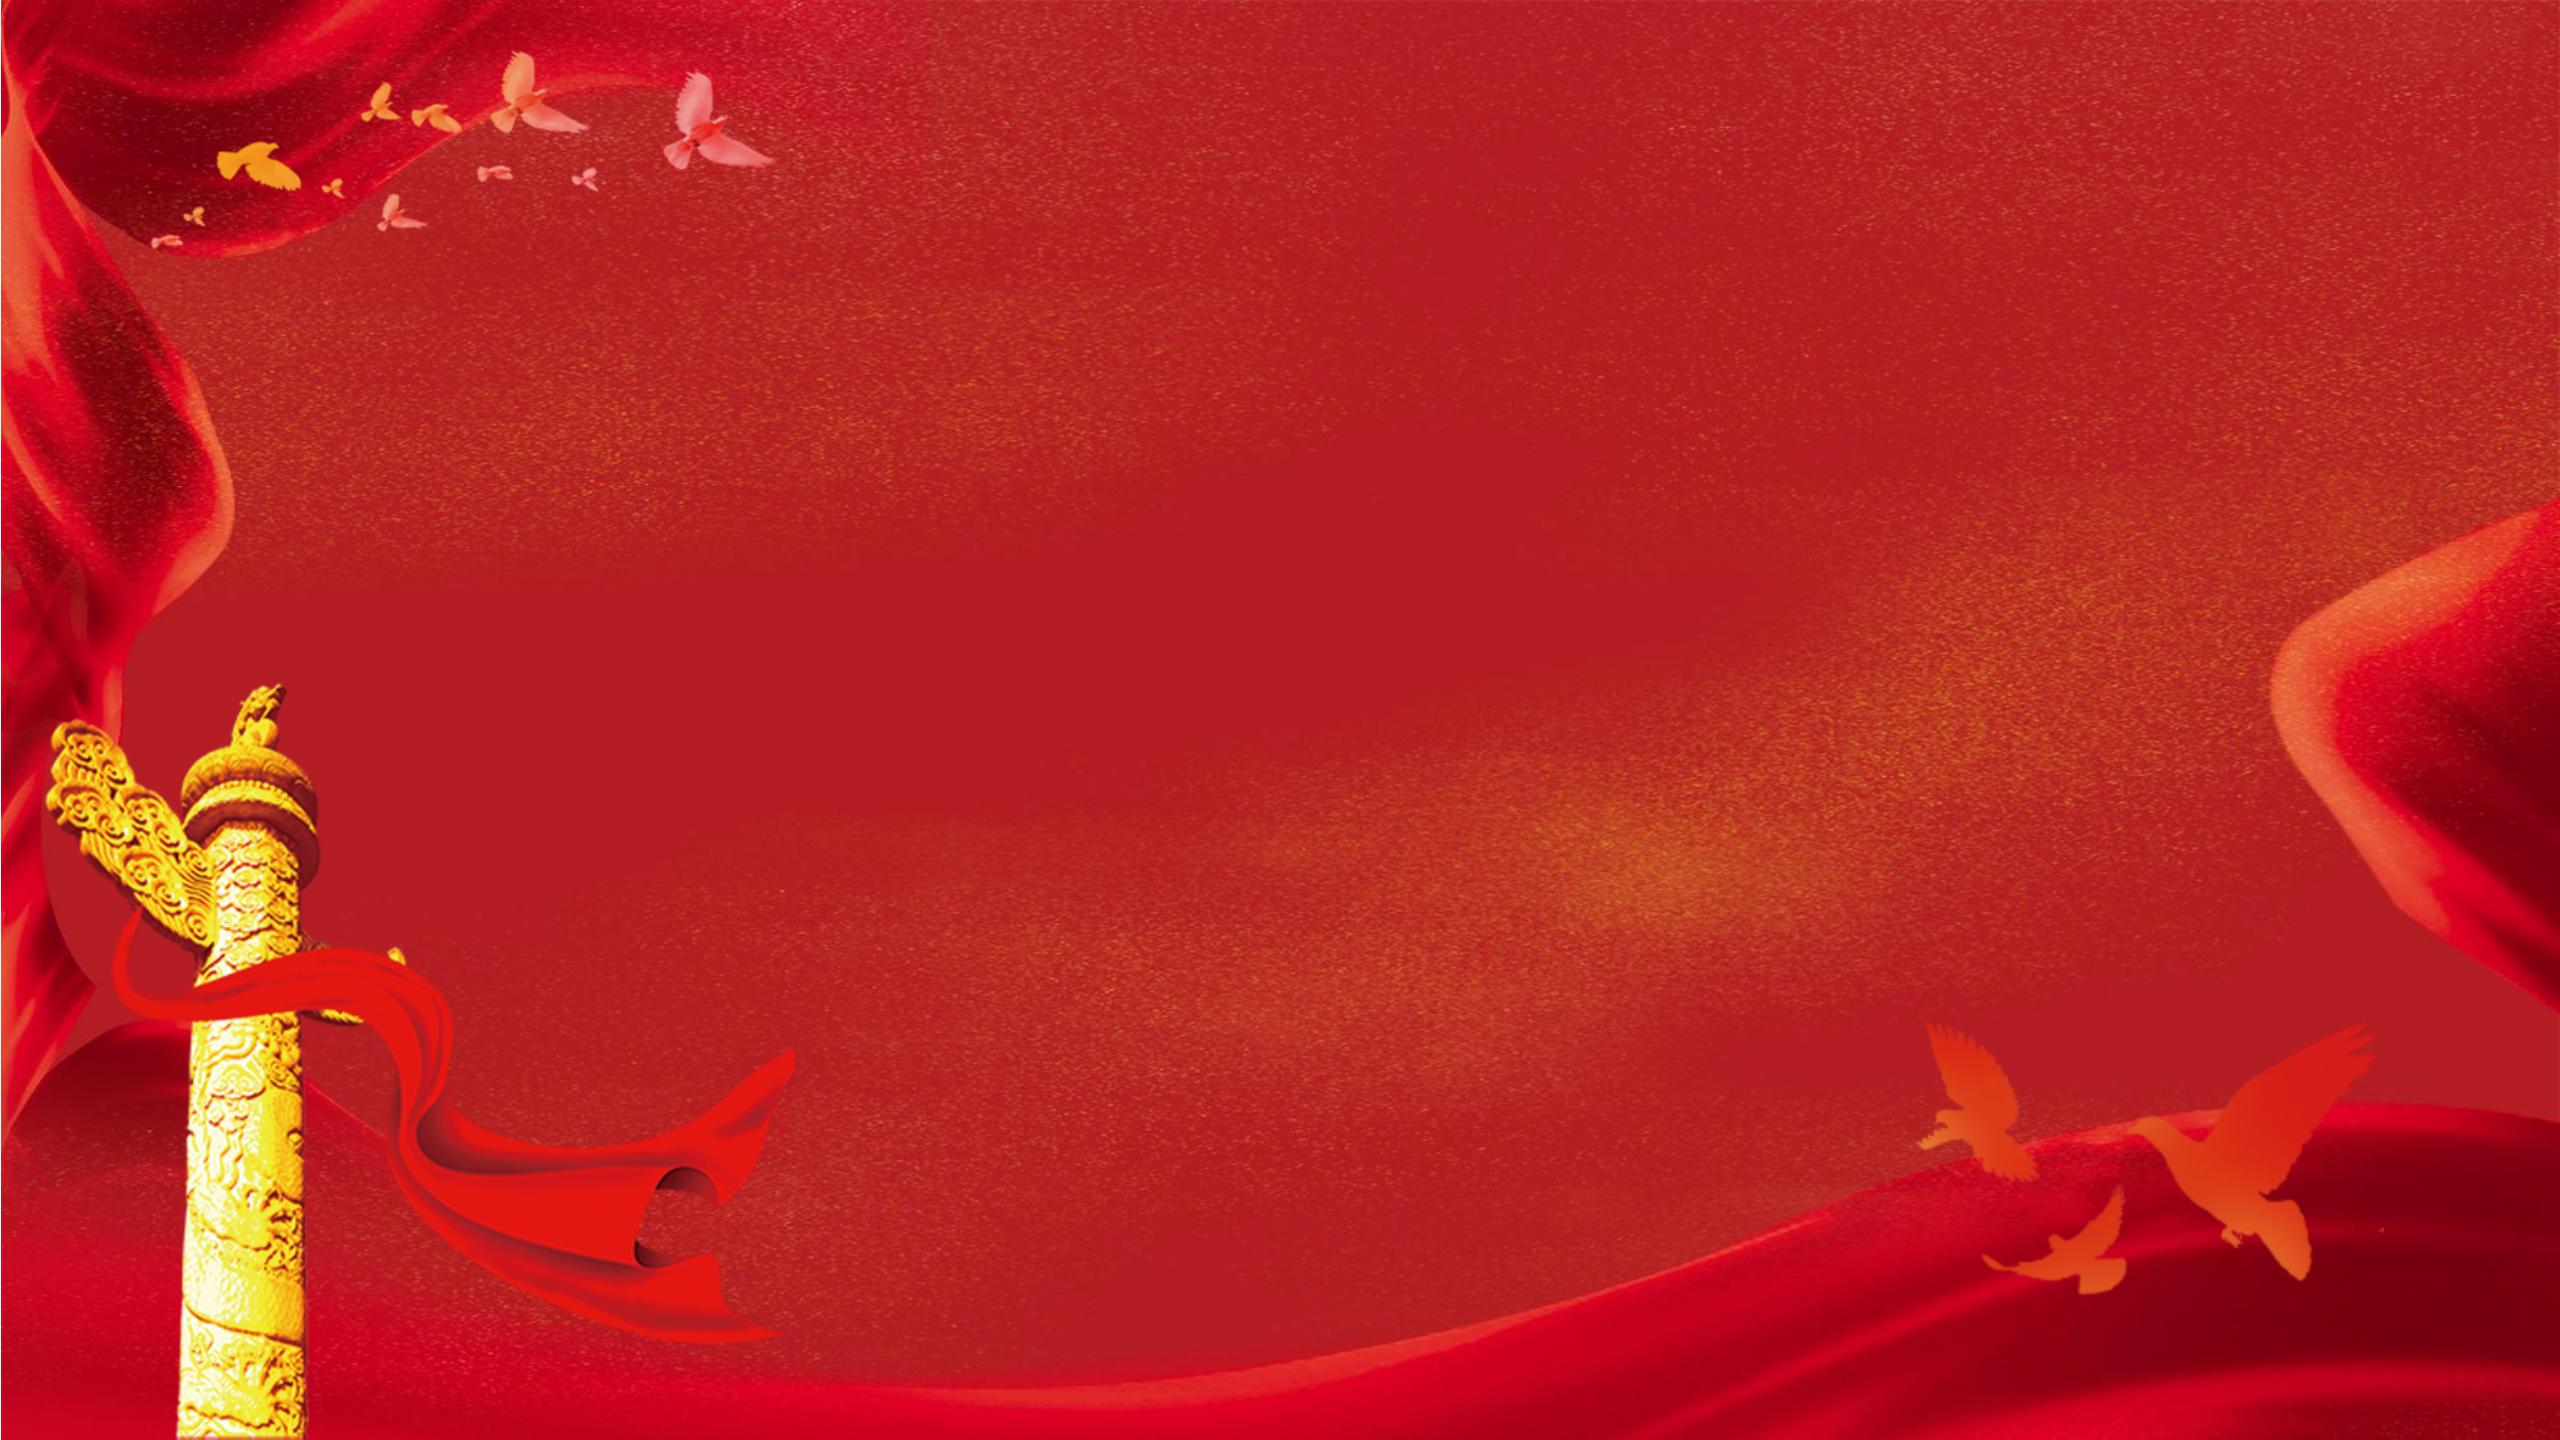 中国风红色党建背景背景图片下载_3508x2480像素JPG格式_编号1ygfkgxj1_图精灵